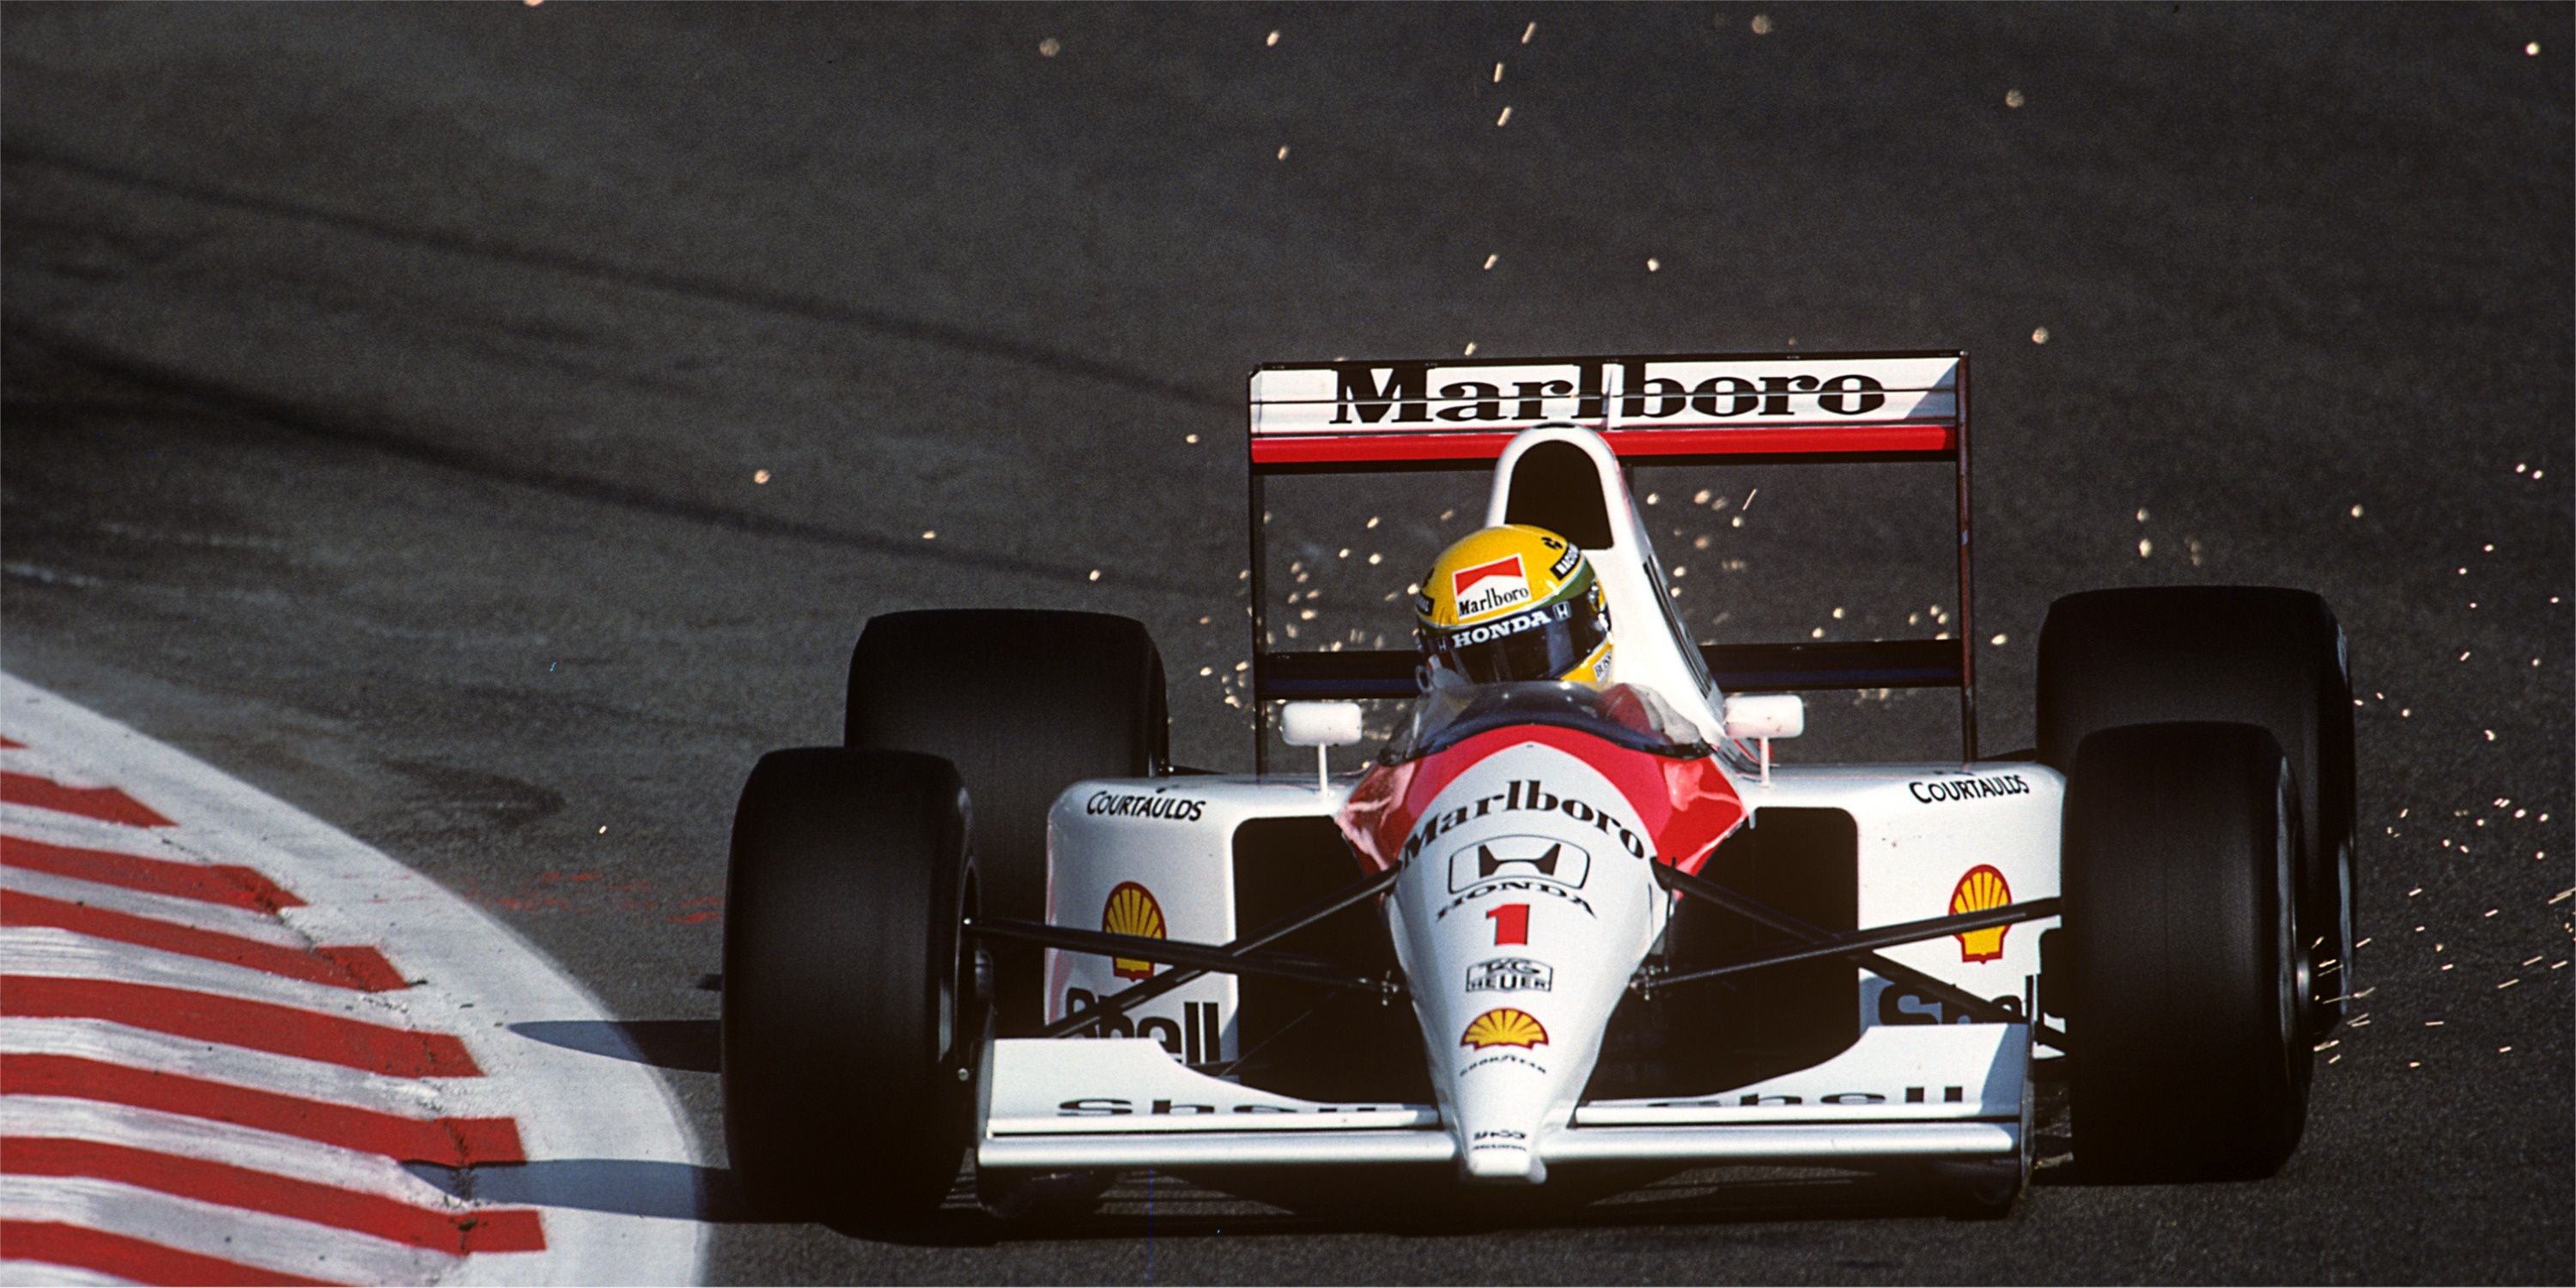 Ayrton Senna drives McLaren